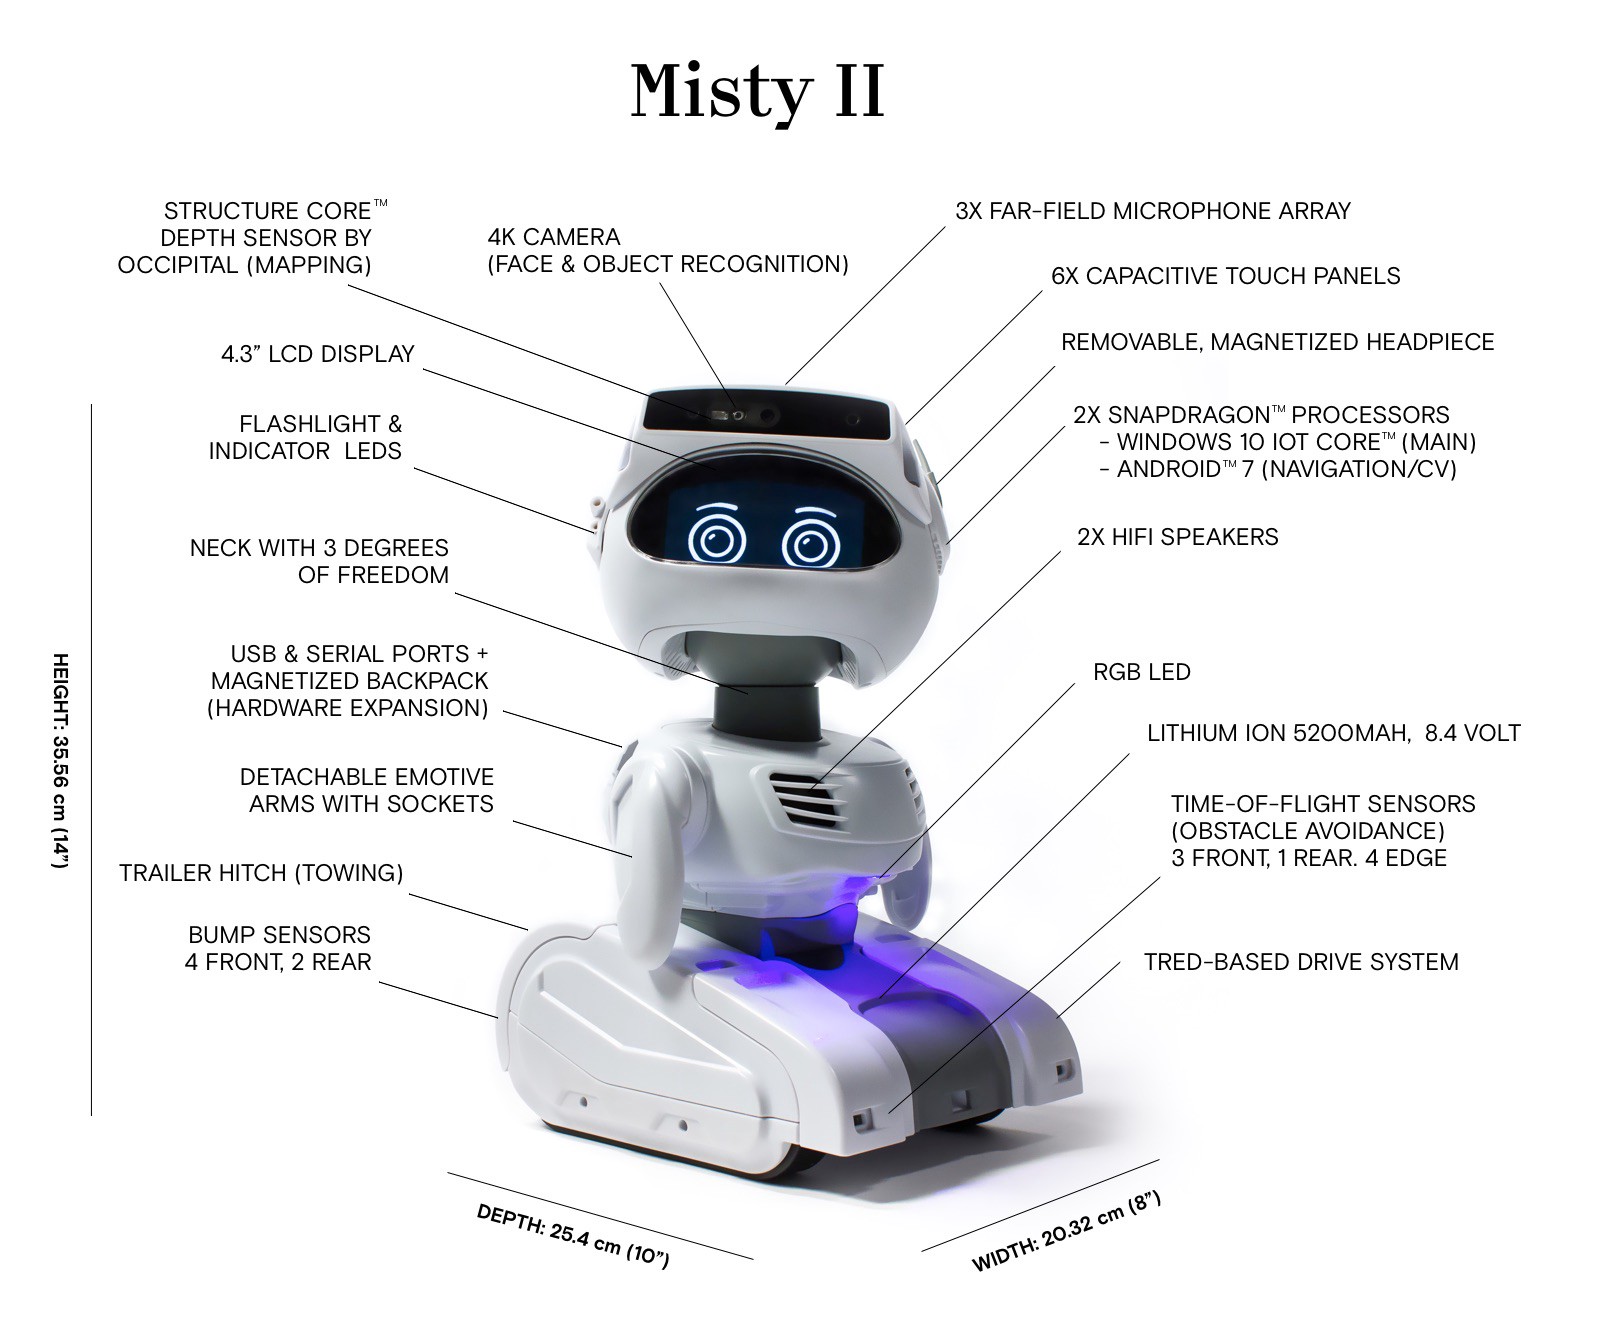 Misty II